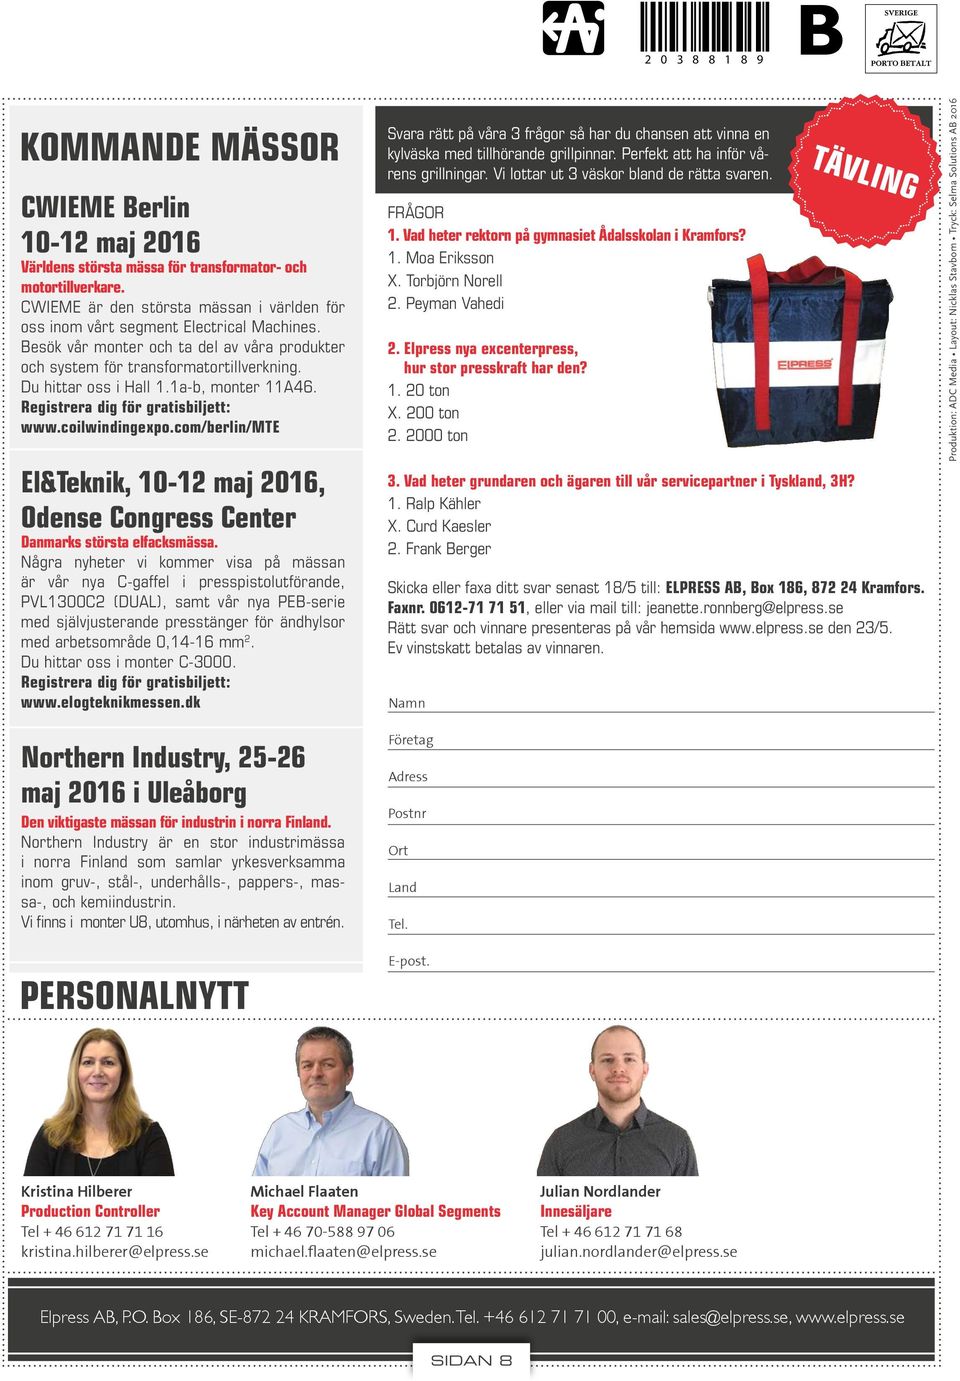 1a-b, monter 11A46. Registrera dig för gratisbiljett: www.coilwindingexpo.com/berlin/te El&Teknik, 10-12 maj 2016, Odense Congress Center Danmarks största elfacksmässa.